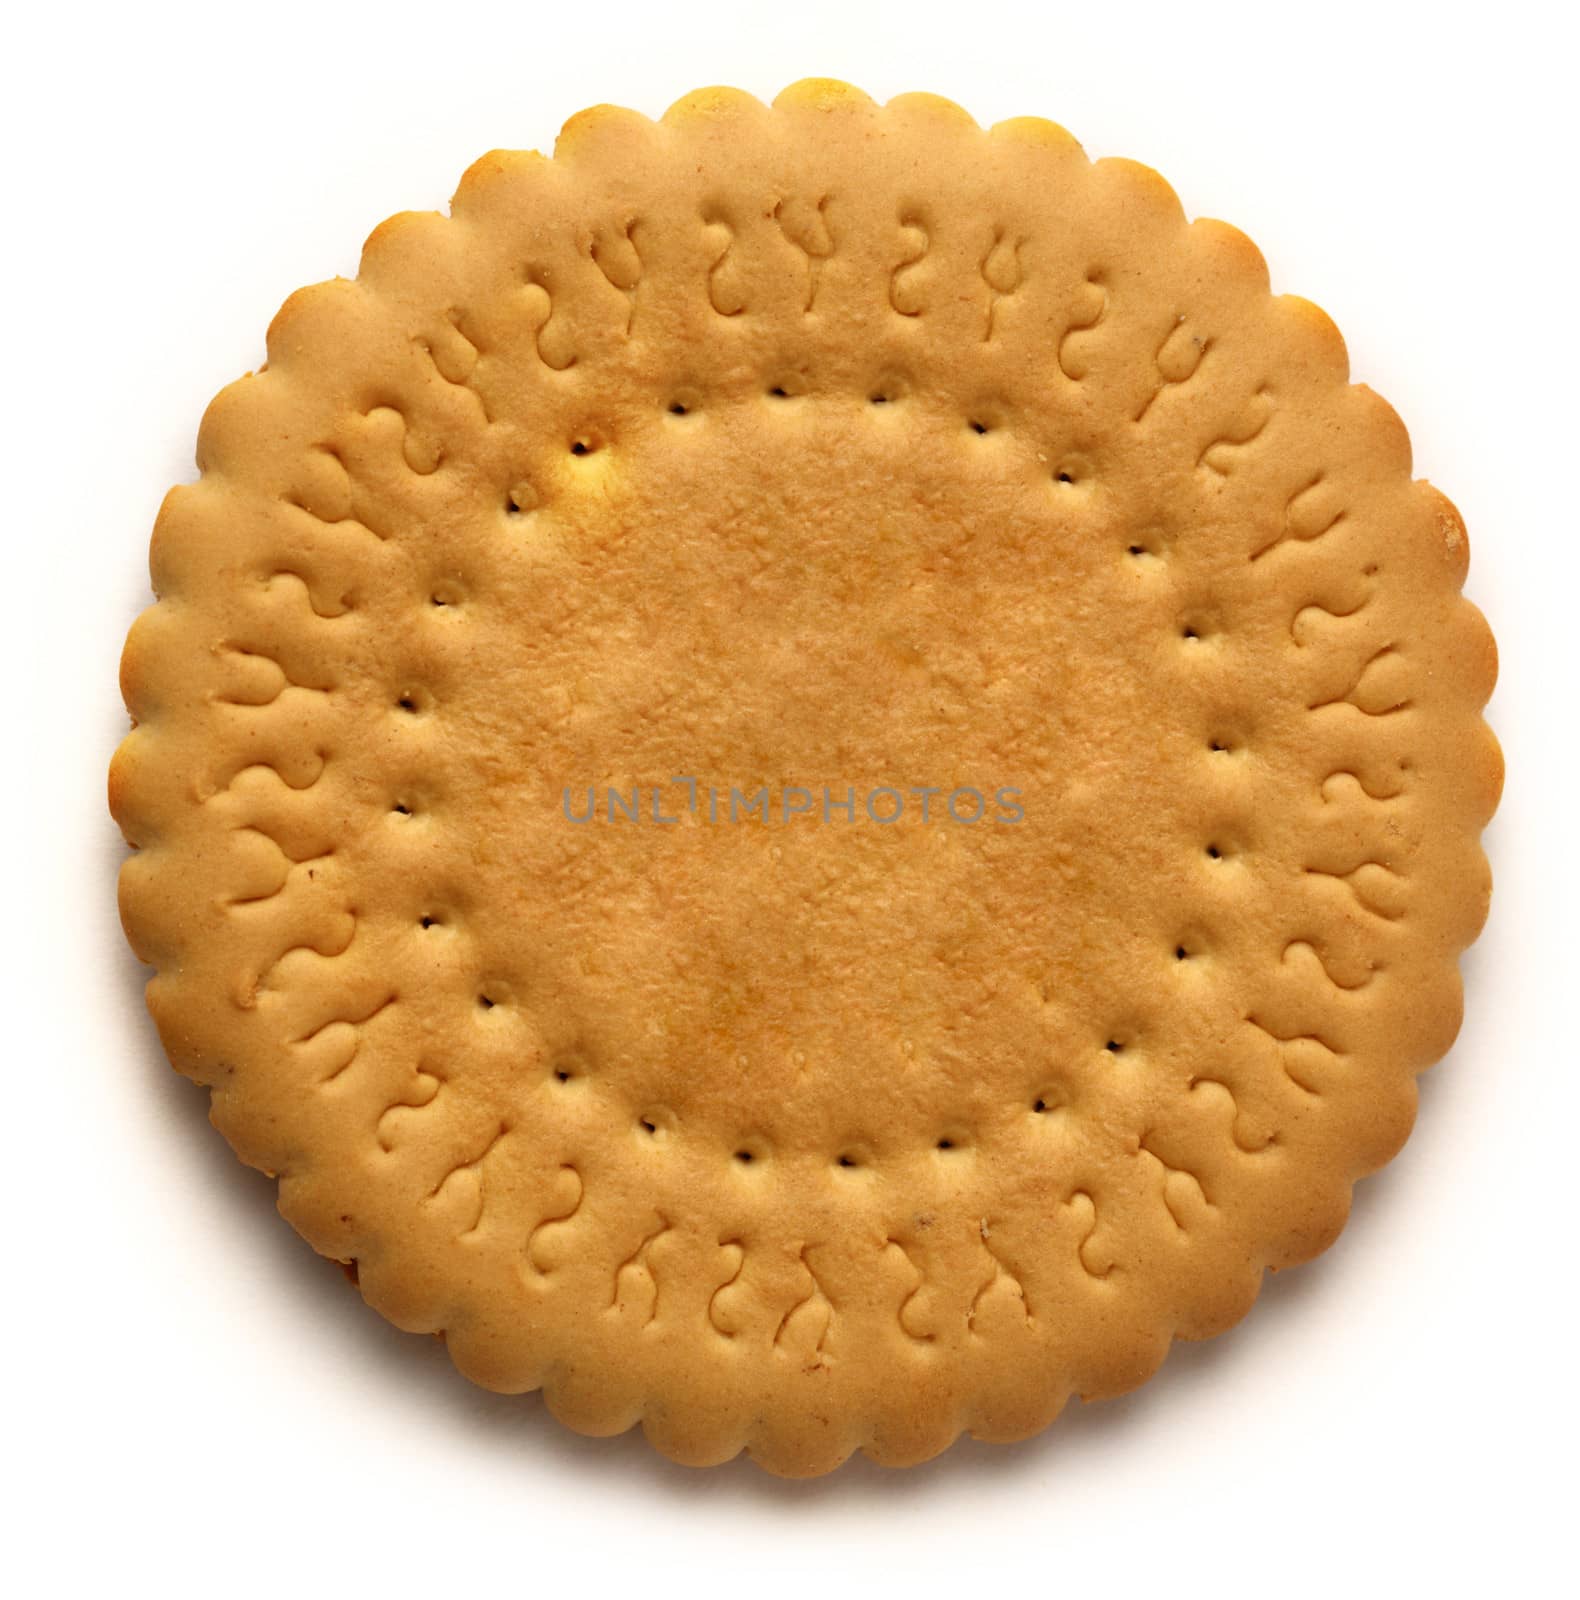 Round biscuit on white background